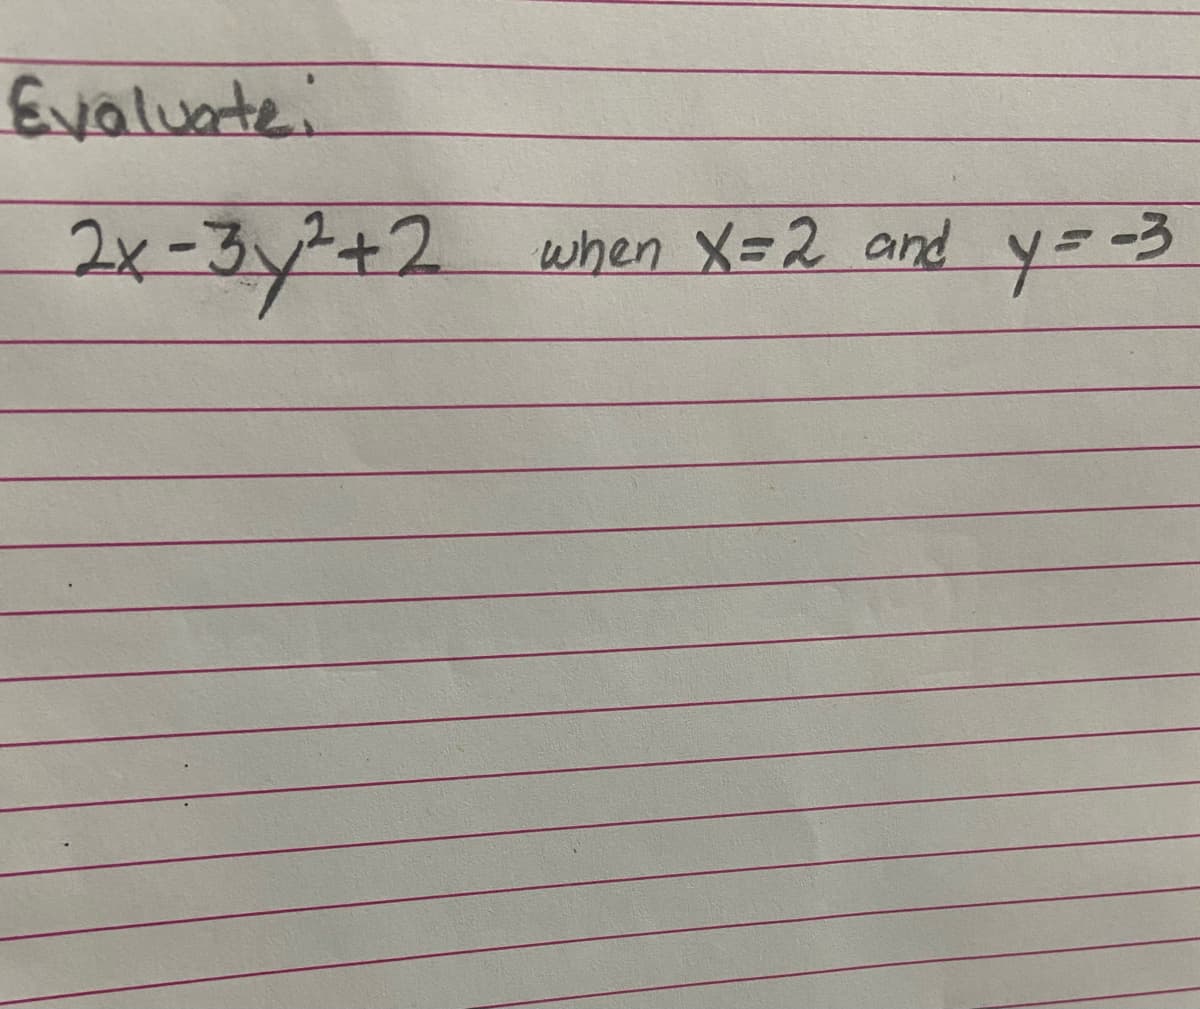 Evalunte:
2x-3y2+2
when X=2 and y=3
